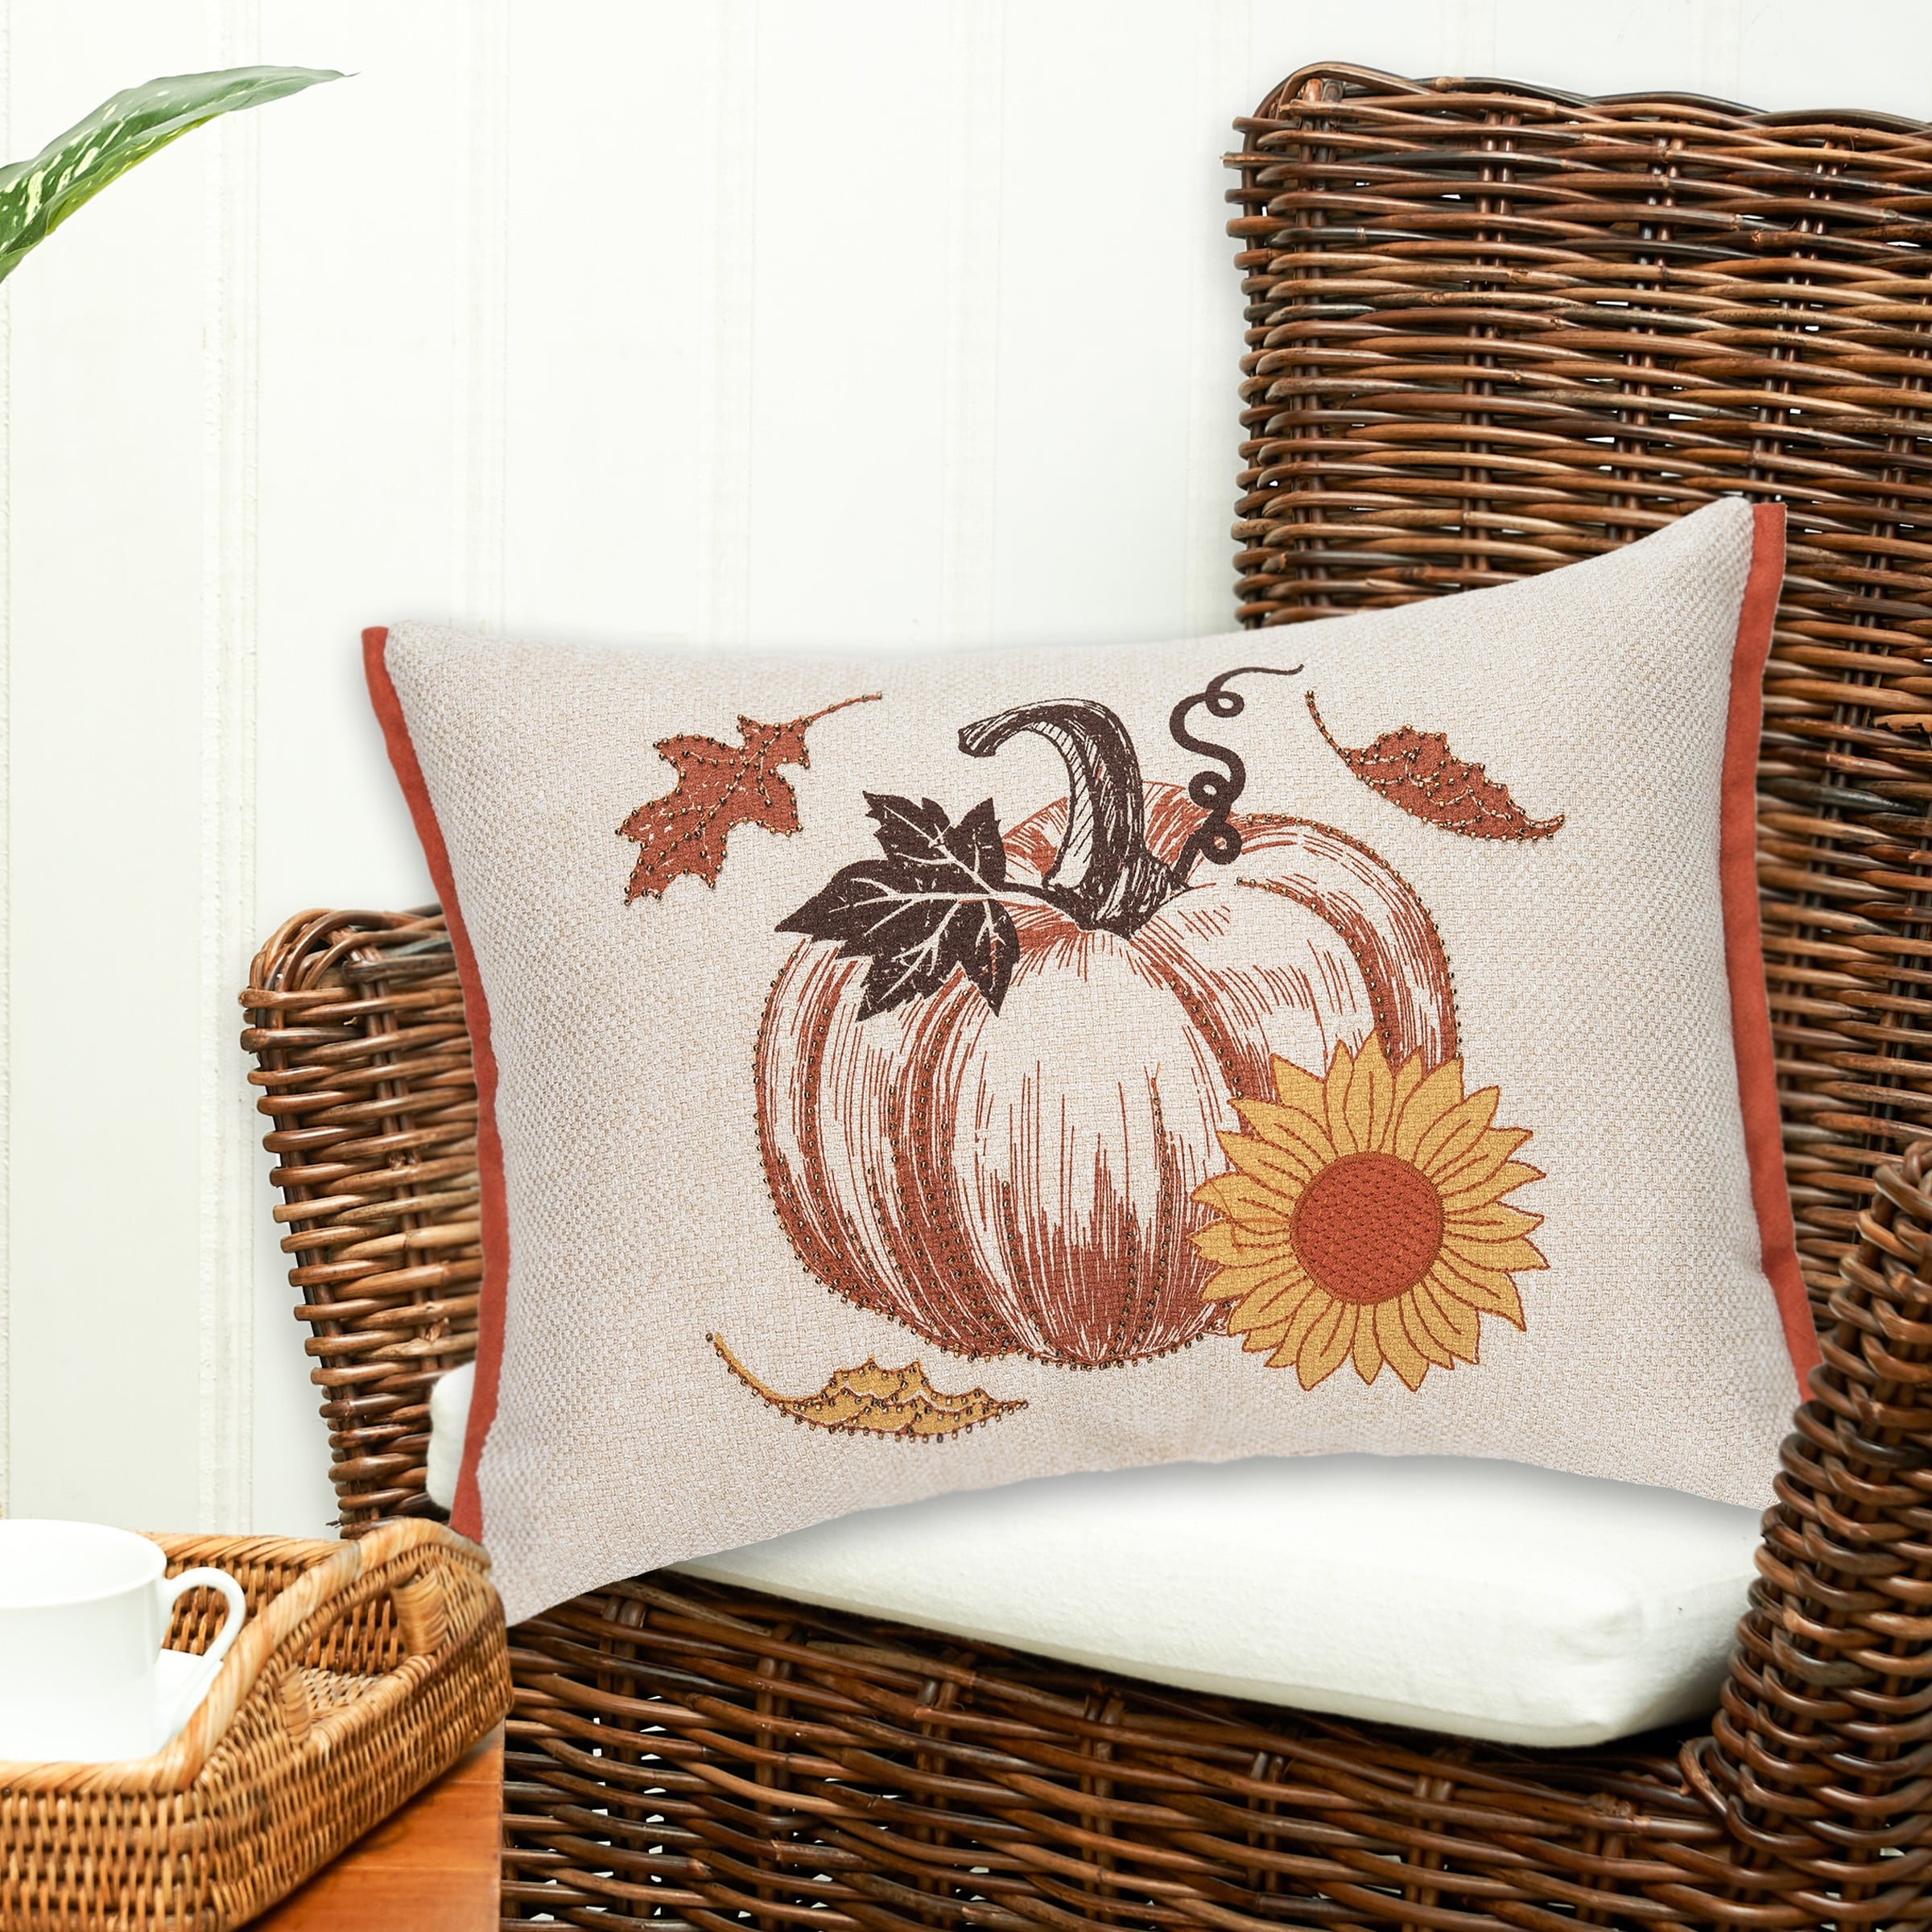 C&F Home Harvest Time Pumpkin Pillow